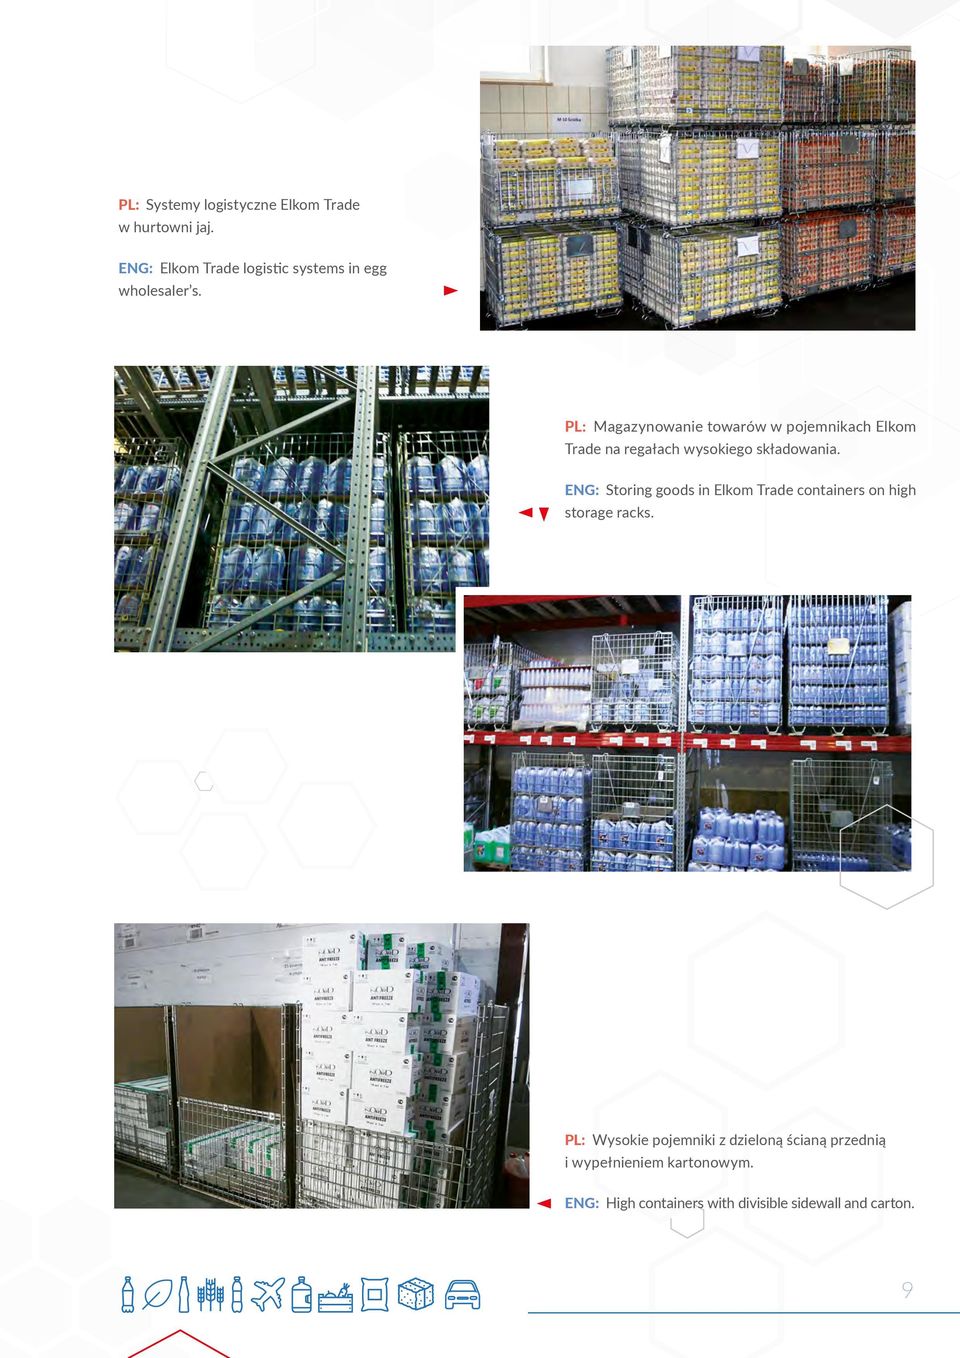 PL: Magazynowanie towarów w pojemnikach Elkom Trade na regałach wysokiego składowania.